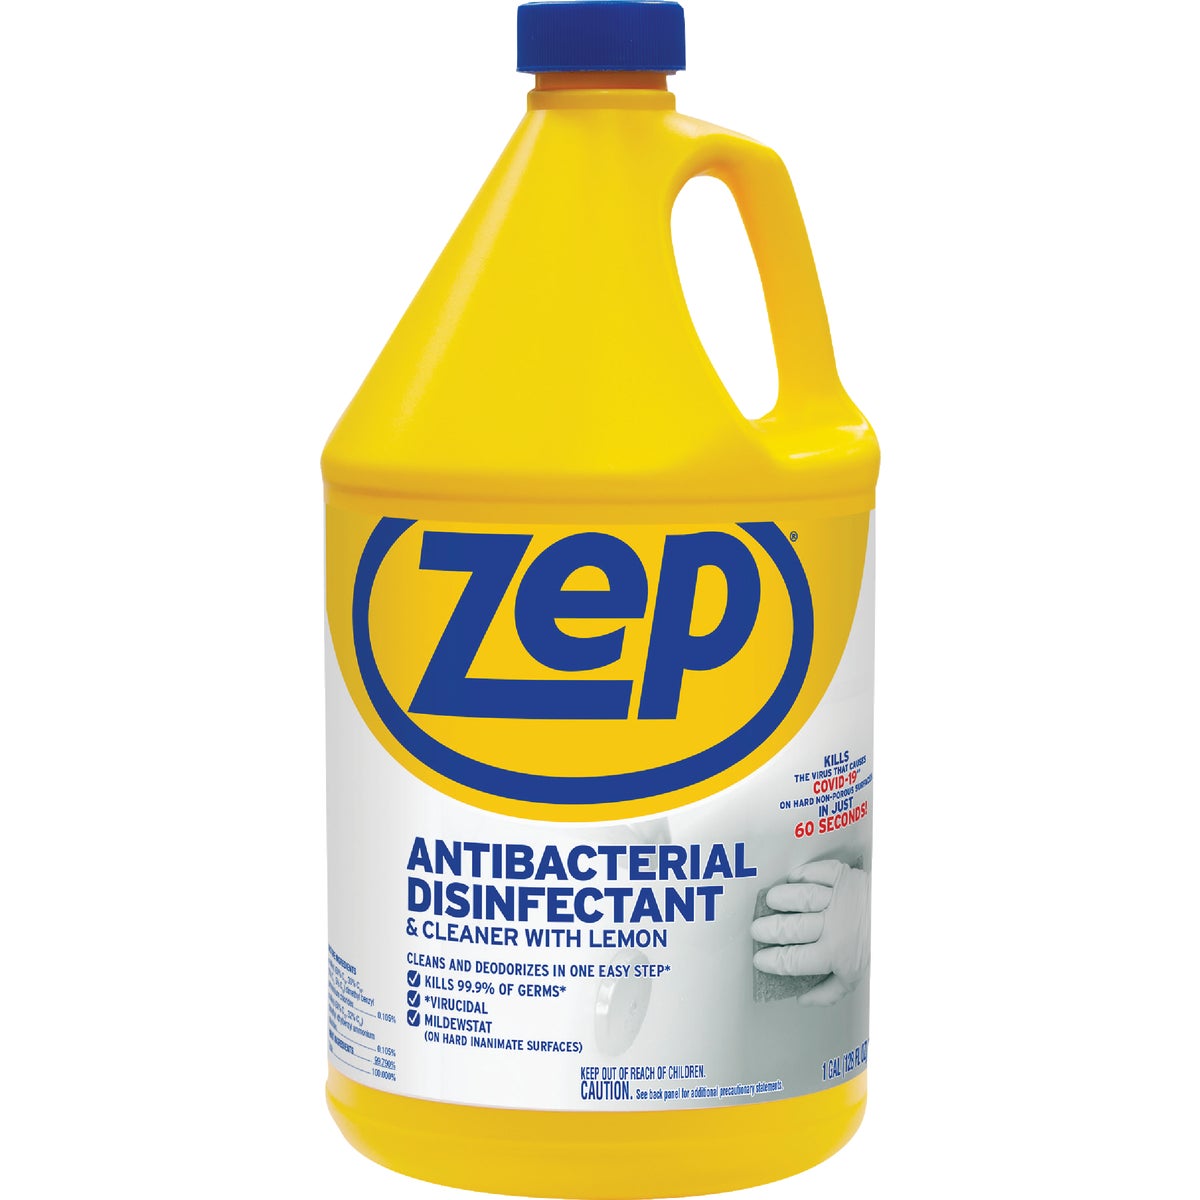 Zep Antibacterial Disinfectant Cleaner